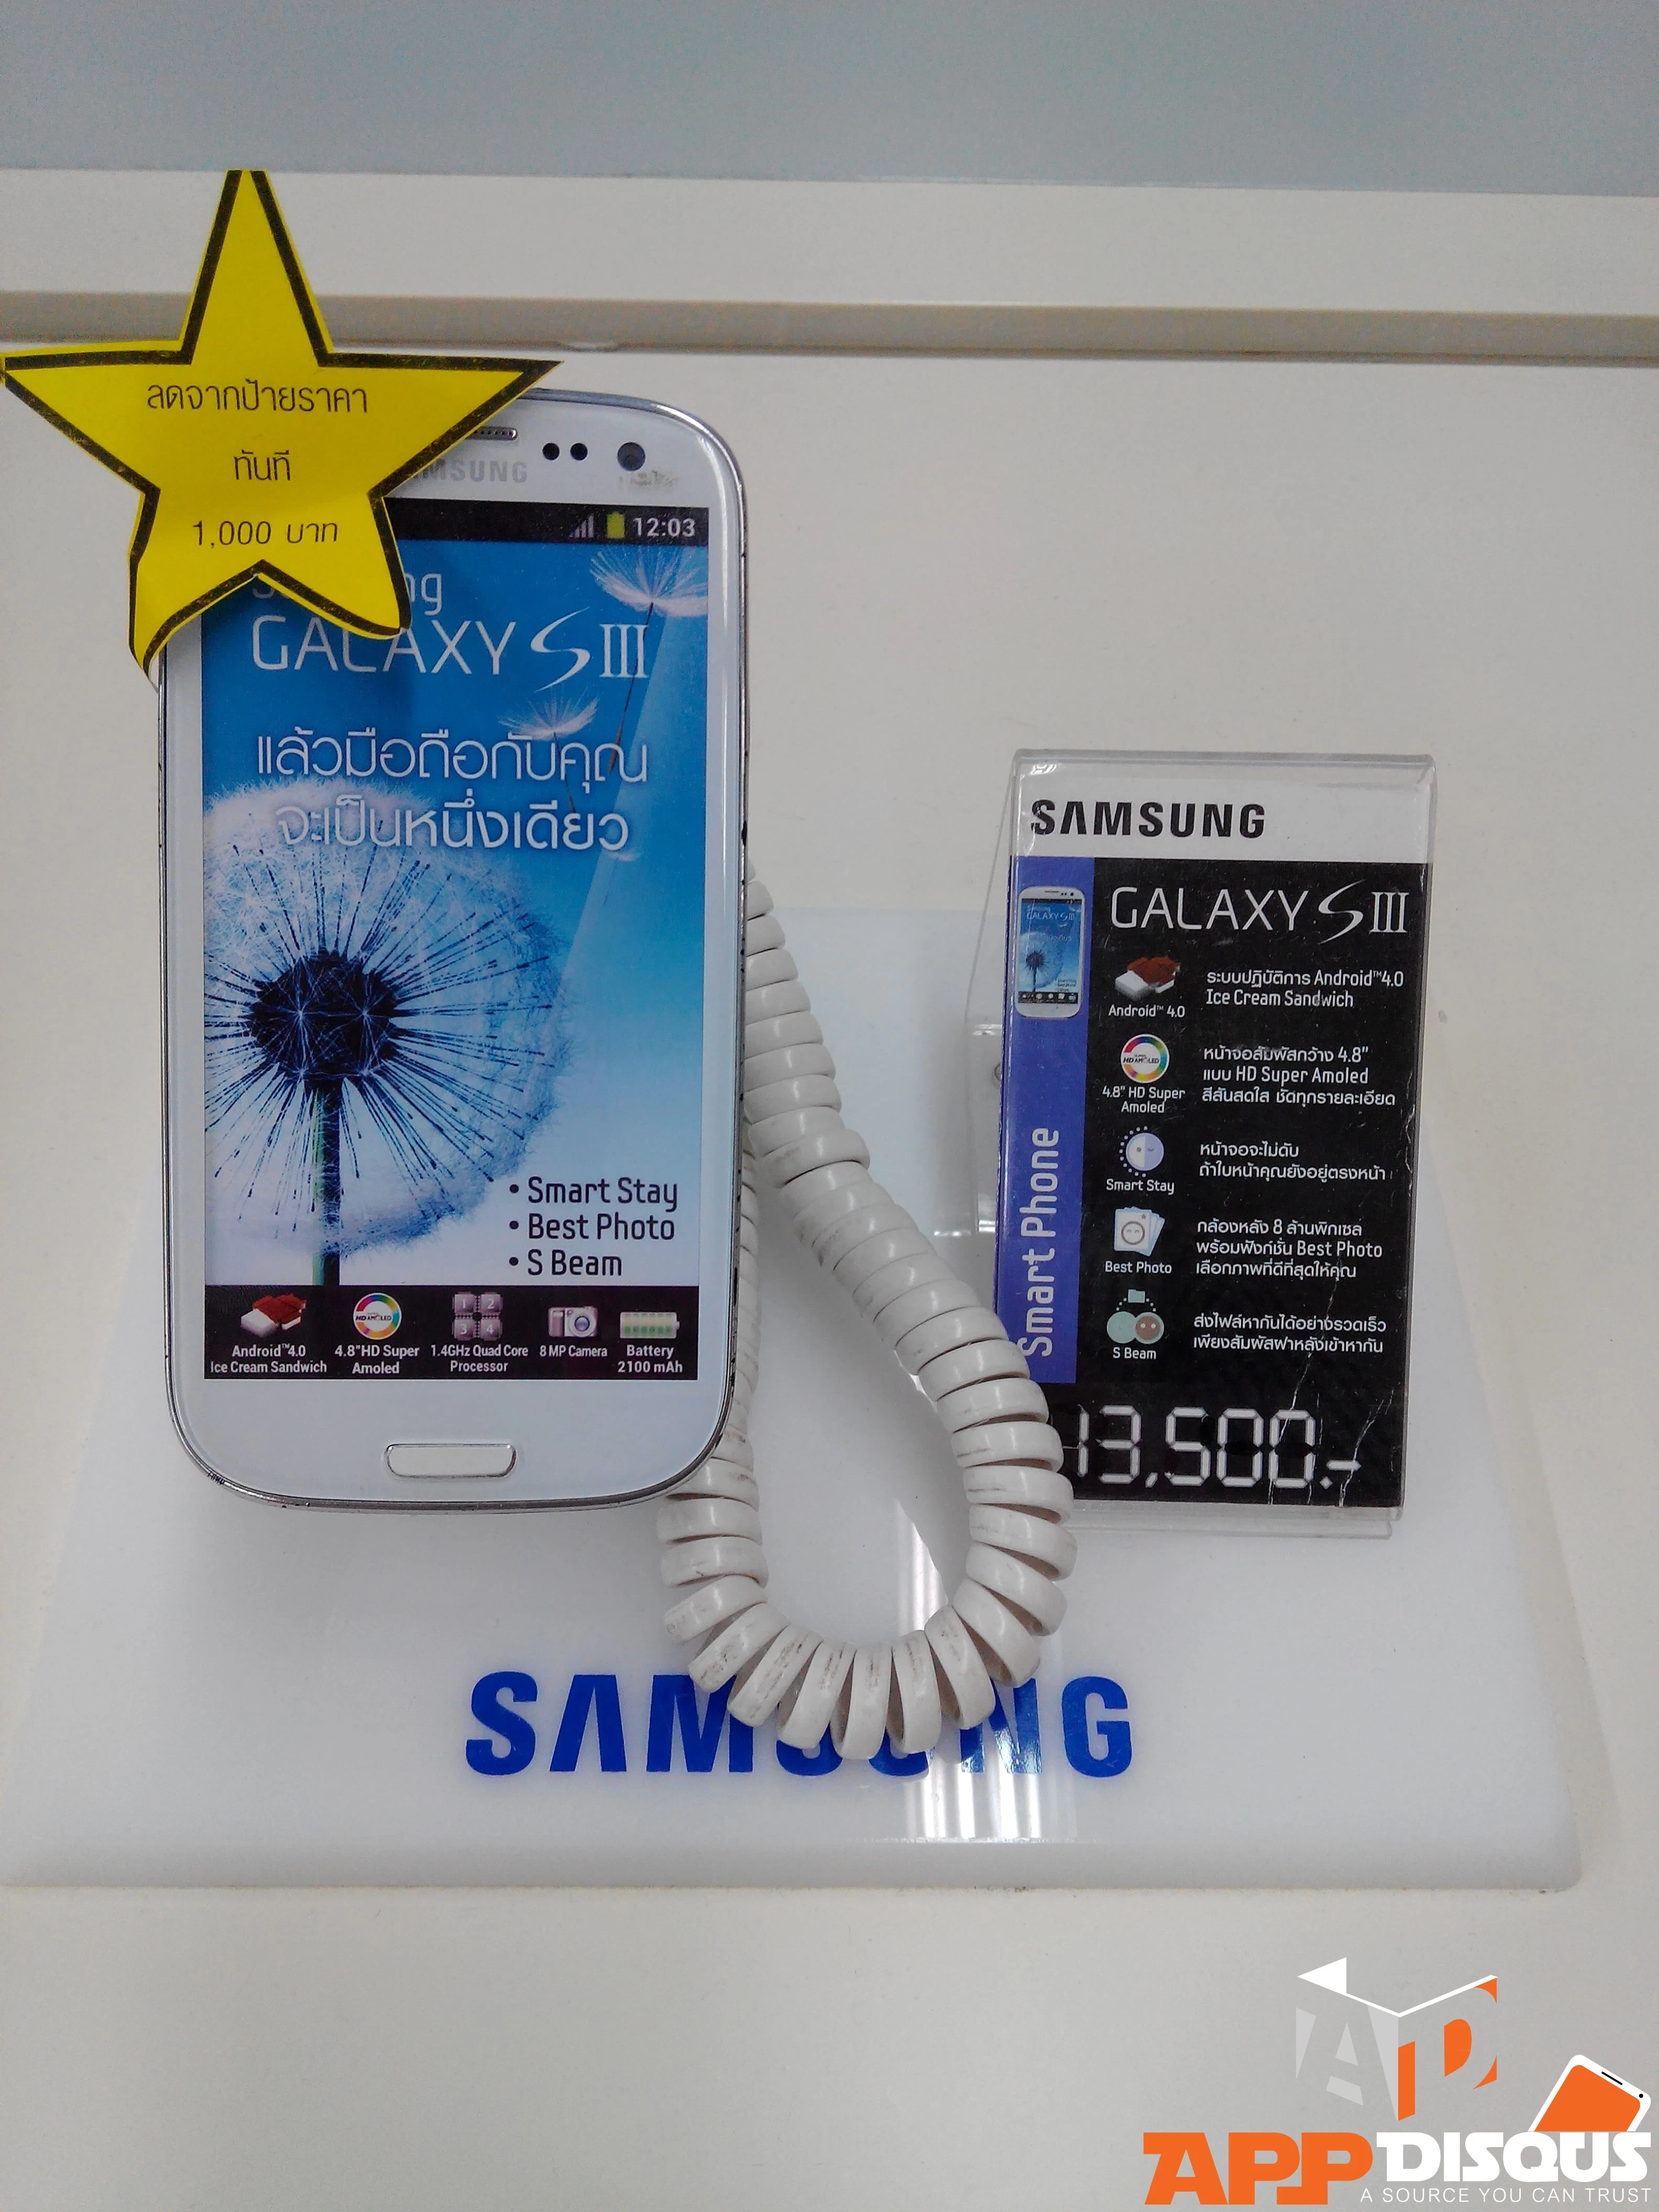 IMG 20140302 184144 | Samsung Galaxy SIII | [แอดมินบุกตลาดมือถือ]Samsung Galaxy S3 กับ Galaxy Note 2 ลดราคาแล้วจ้าที่ Big C Extra ลาดพร้าว